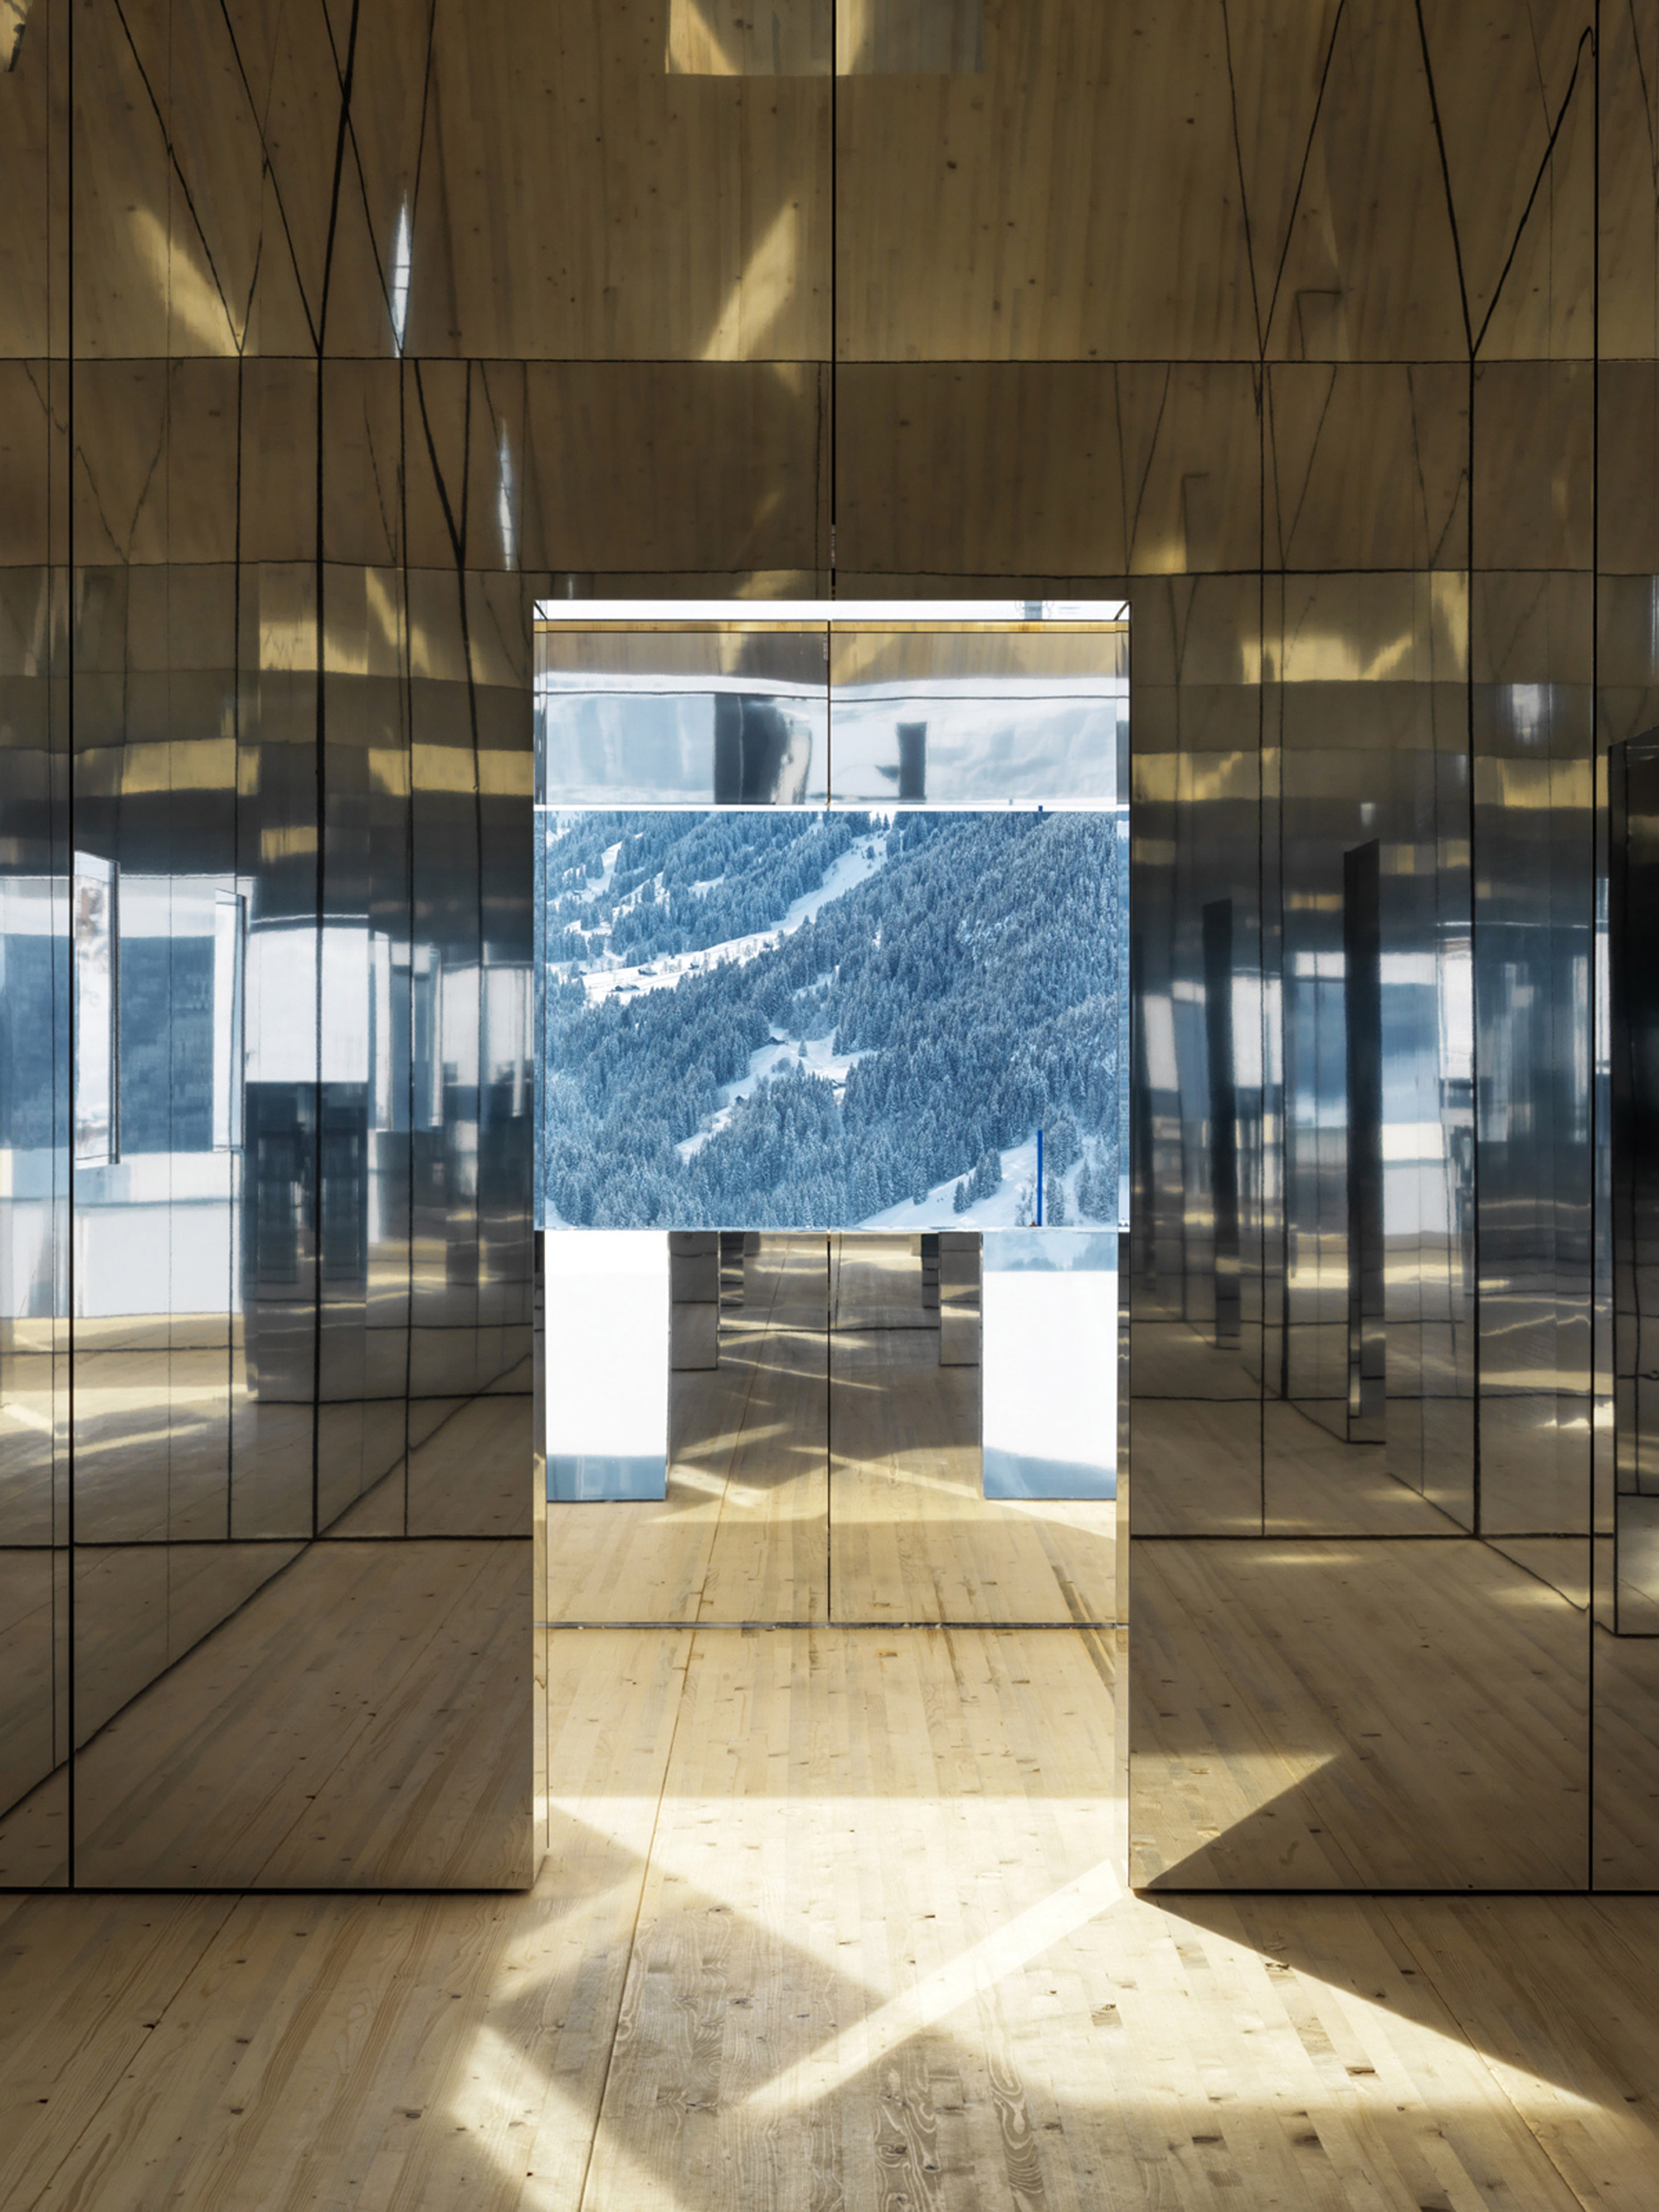 Mirage Gstaad by Doug Aitken, interiors